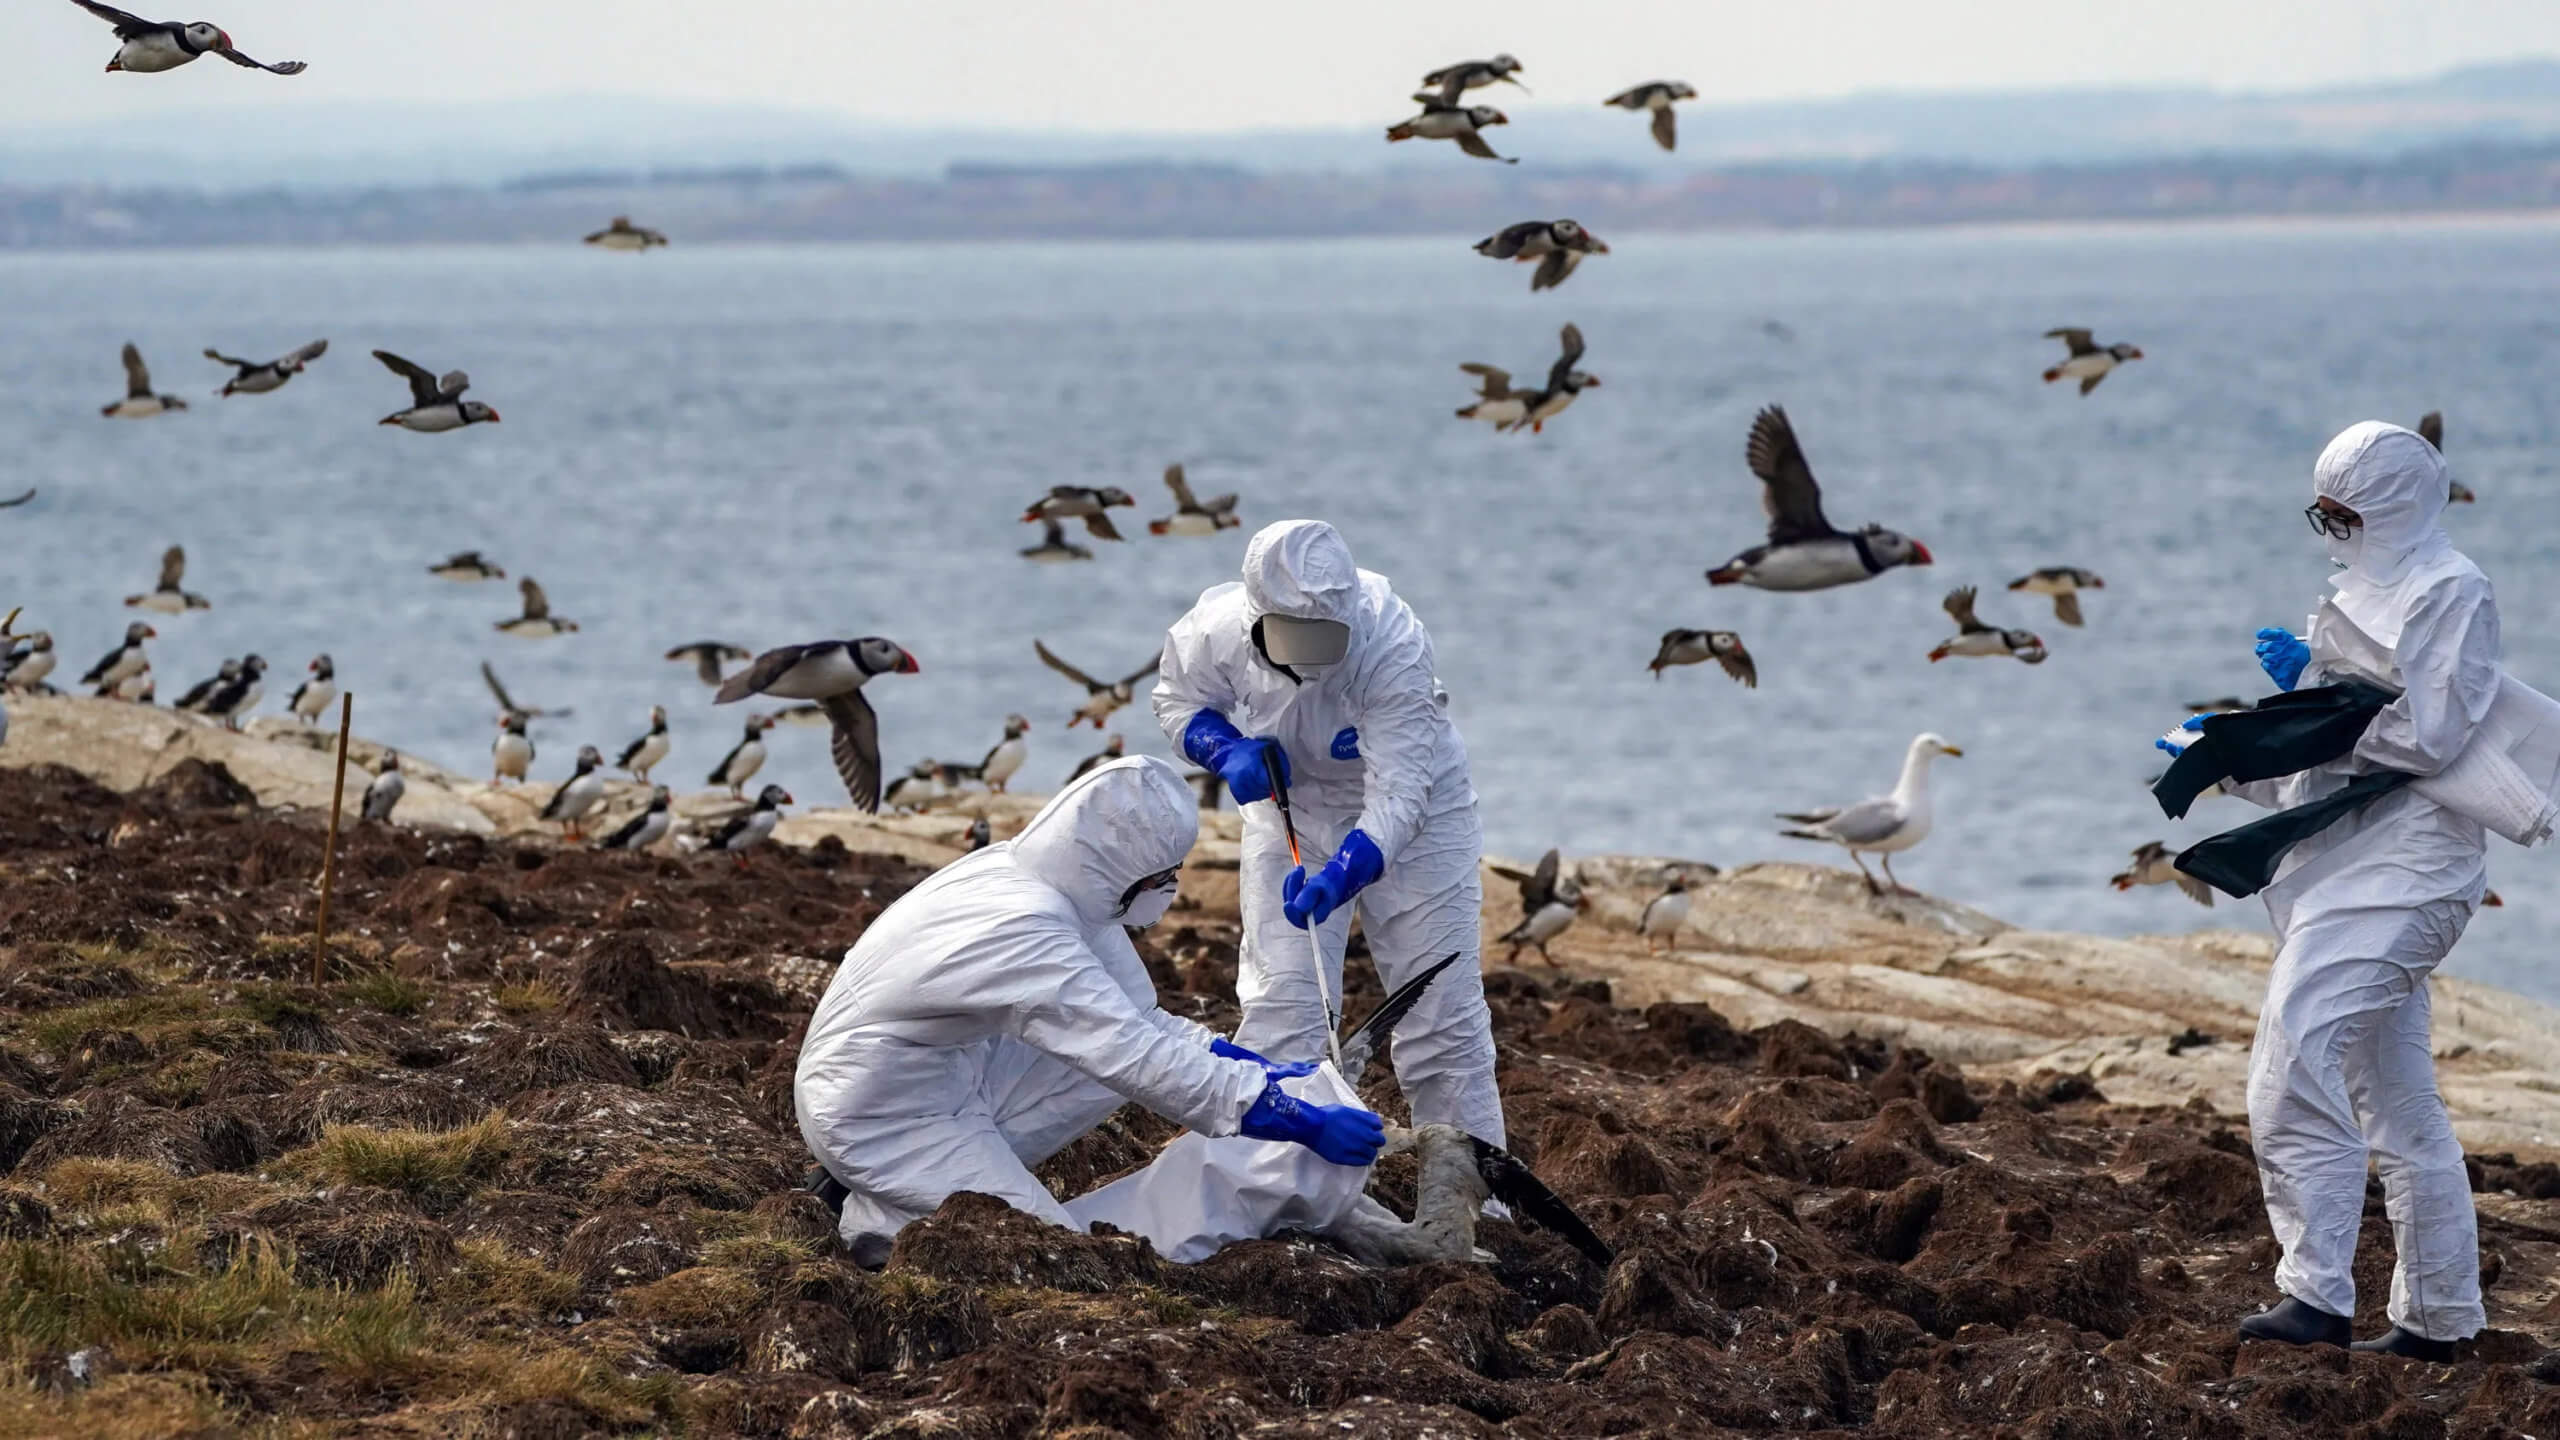 Какие виды животных заражаются? В Перу от птичьего гриппа погибло 3500 морских обитателей. Фото.